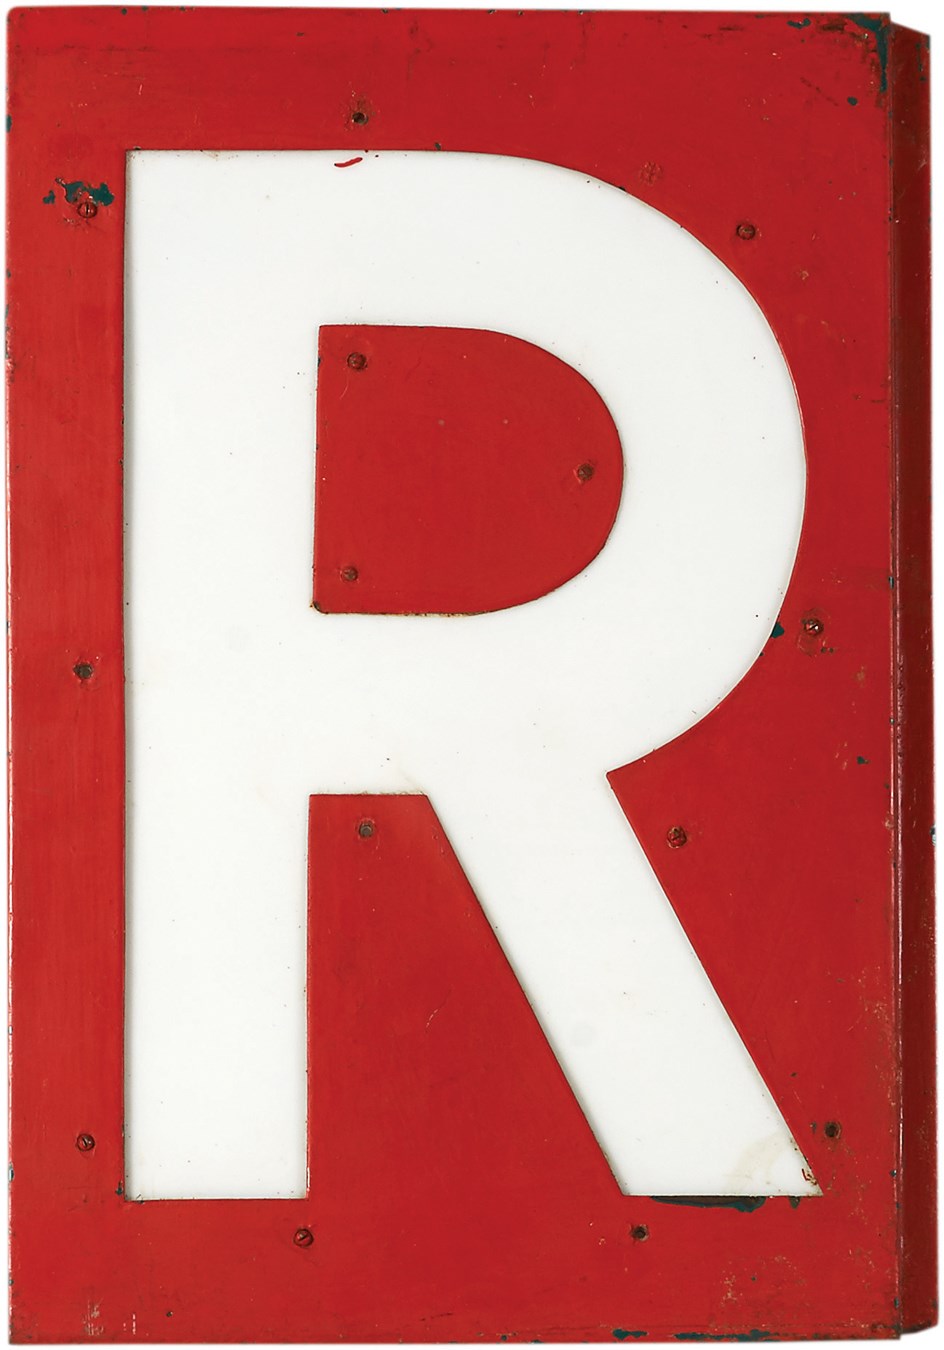 Chicago Cubs & Wrigley Field - 1930s Wrigley Field Scoreboard Letter "R" in "Wrigley Field" Marquee